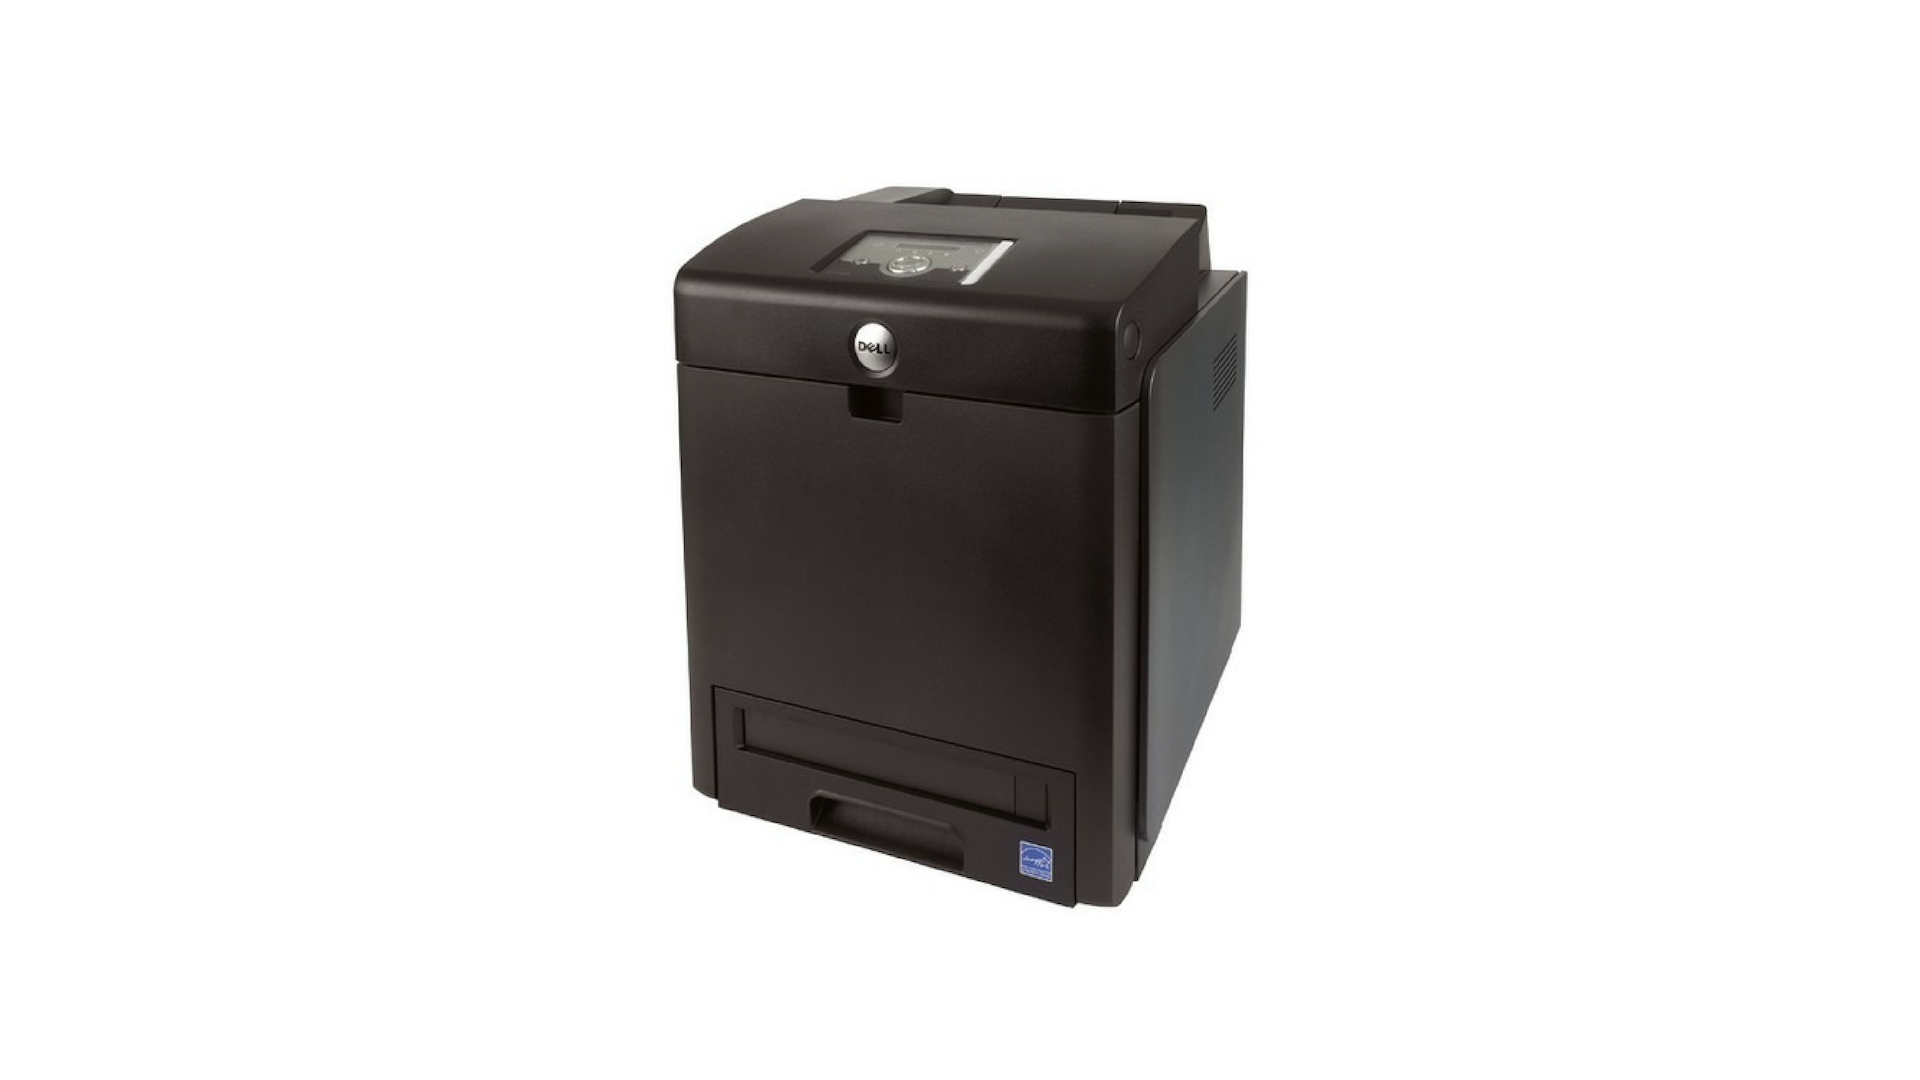 Dell laser printer 3100cn windows 10